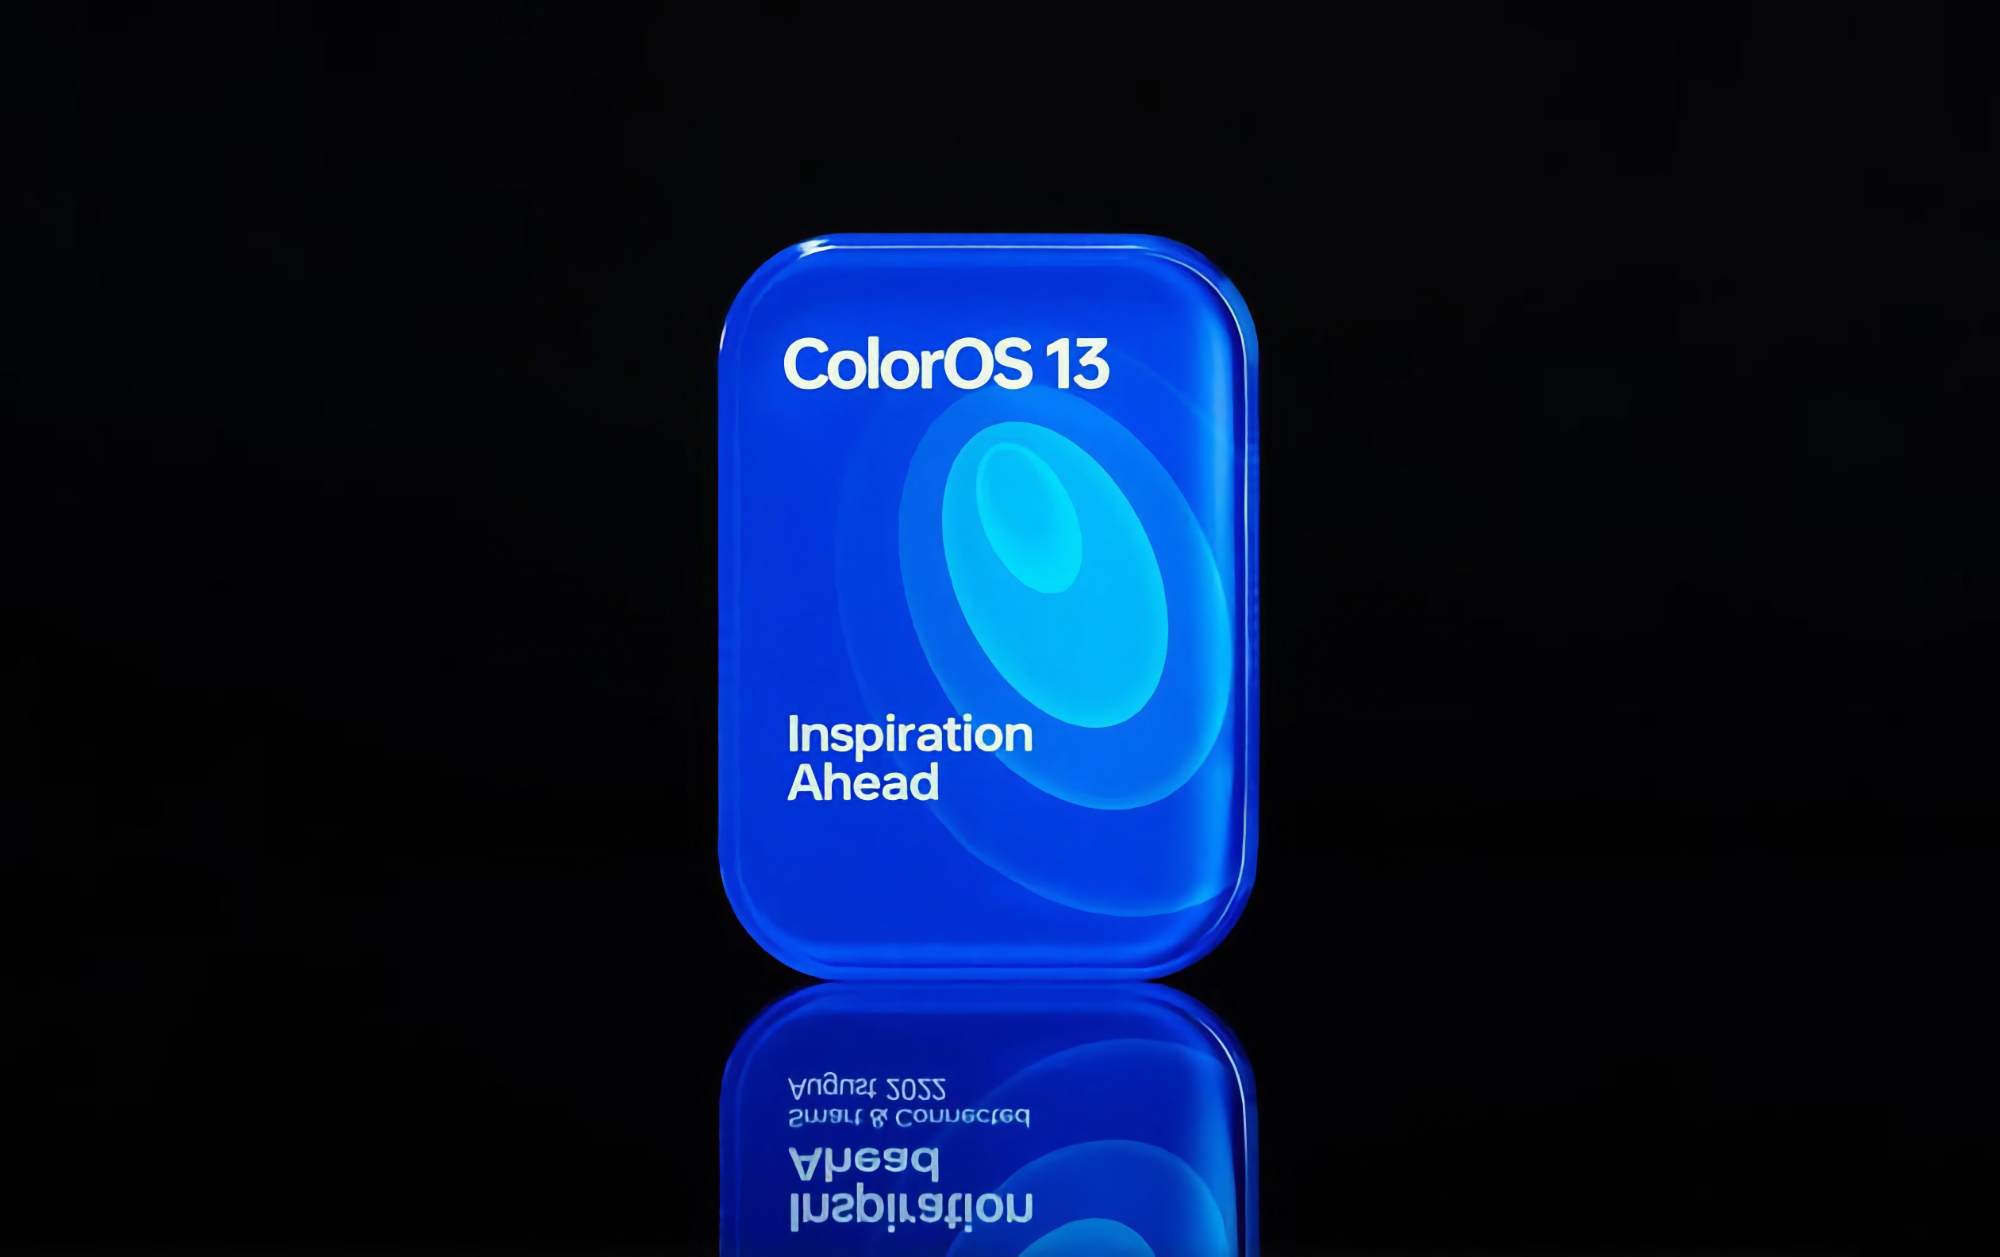 OPPO ha revelado que los smartphones de la compañía recibirán ColorOS 13 basado en Android 13 en diciembre